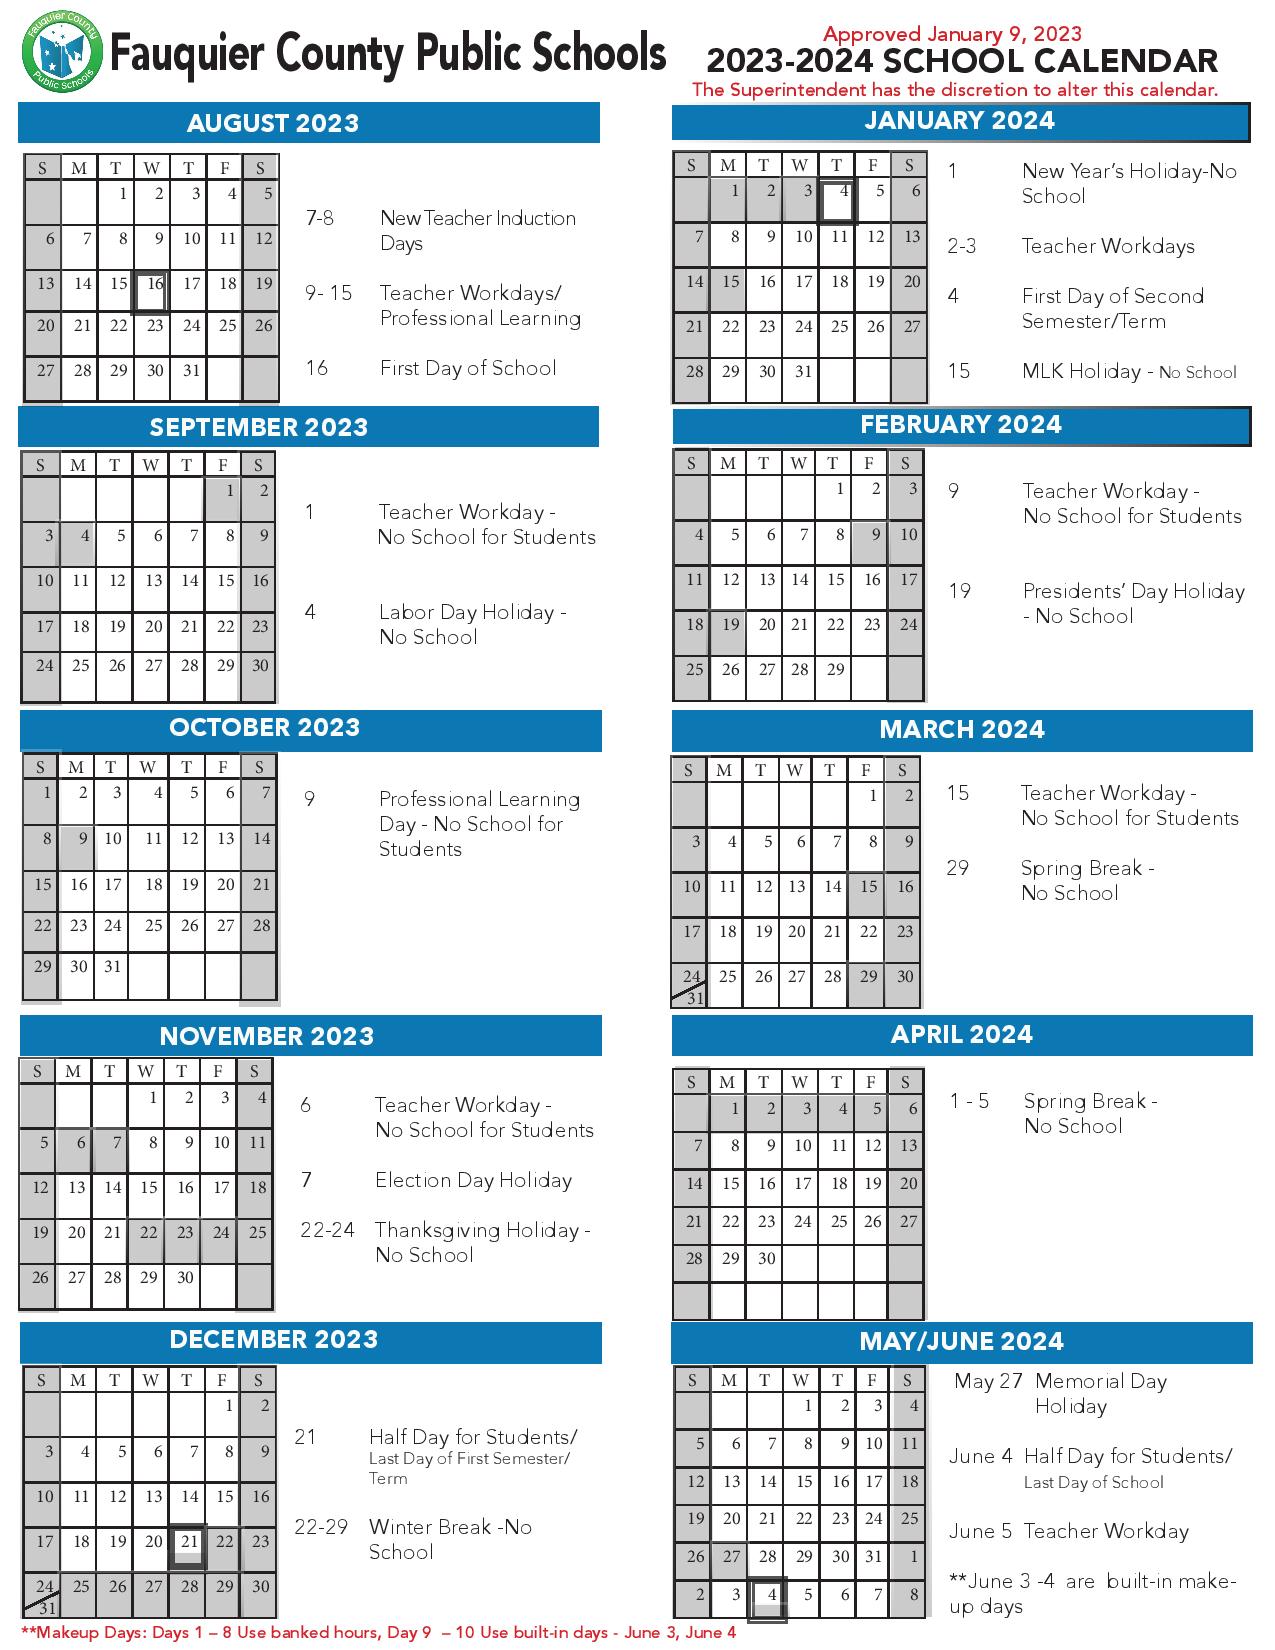 Fauquier County Public Schools Calendar 20232024 in PDF